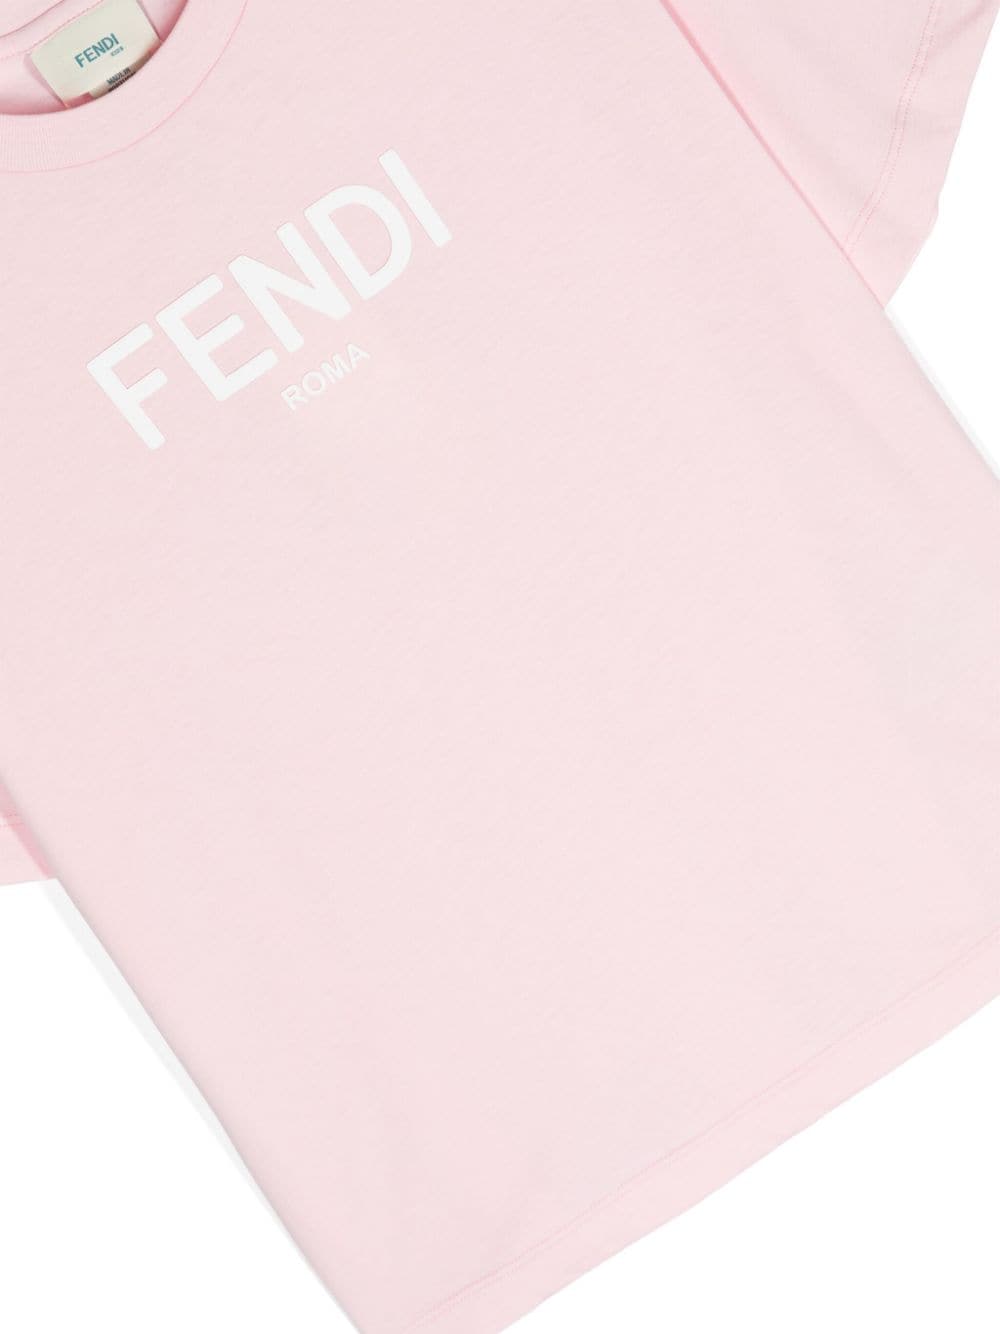 Light pink front logo t-shirt